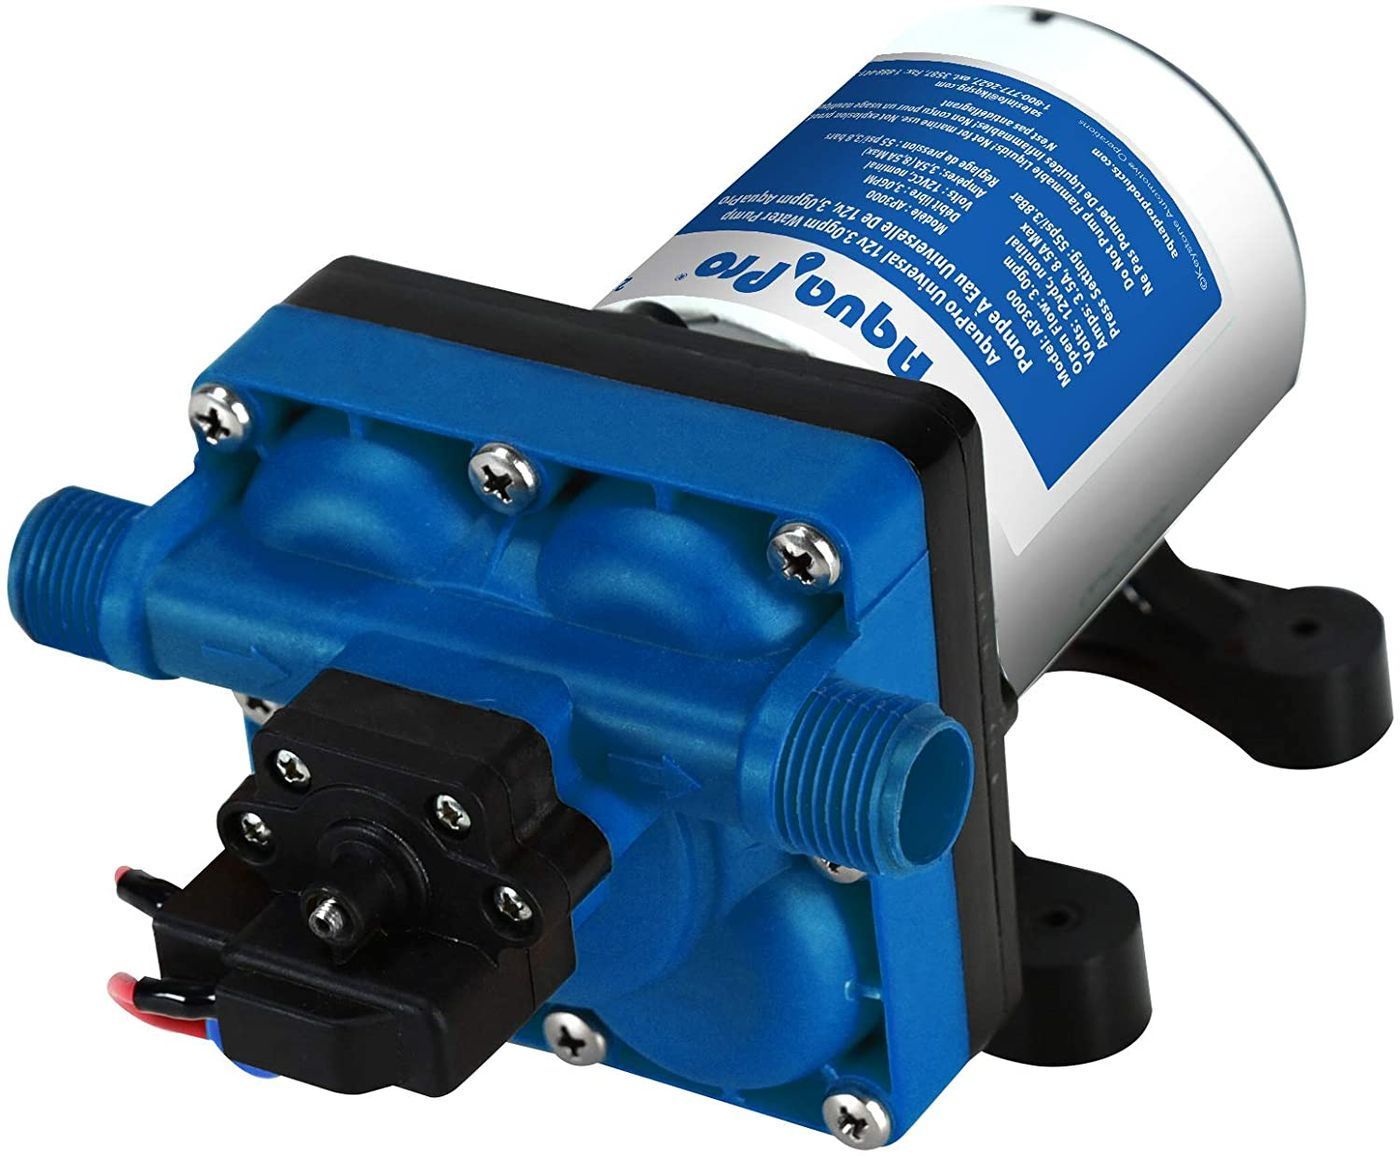 Aqua Pro 3.0 water pump